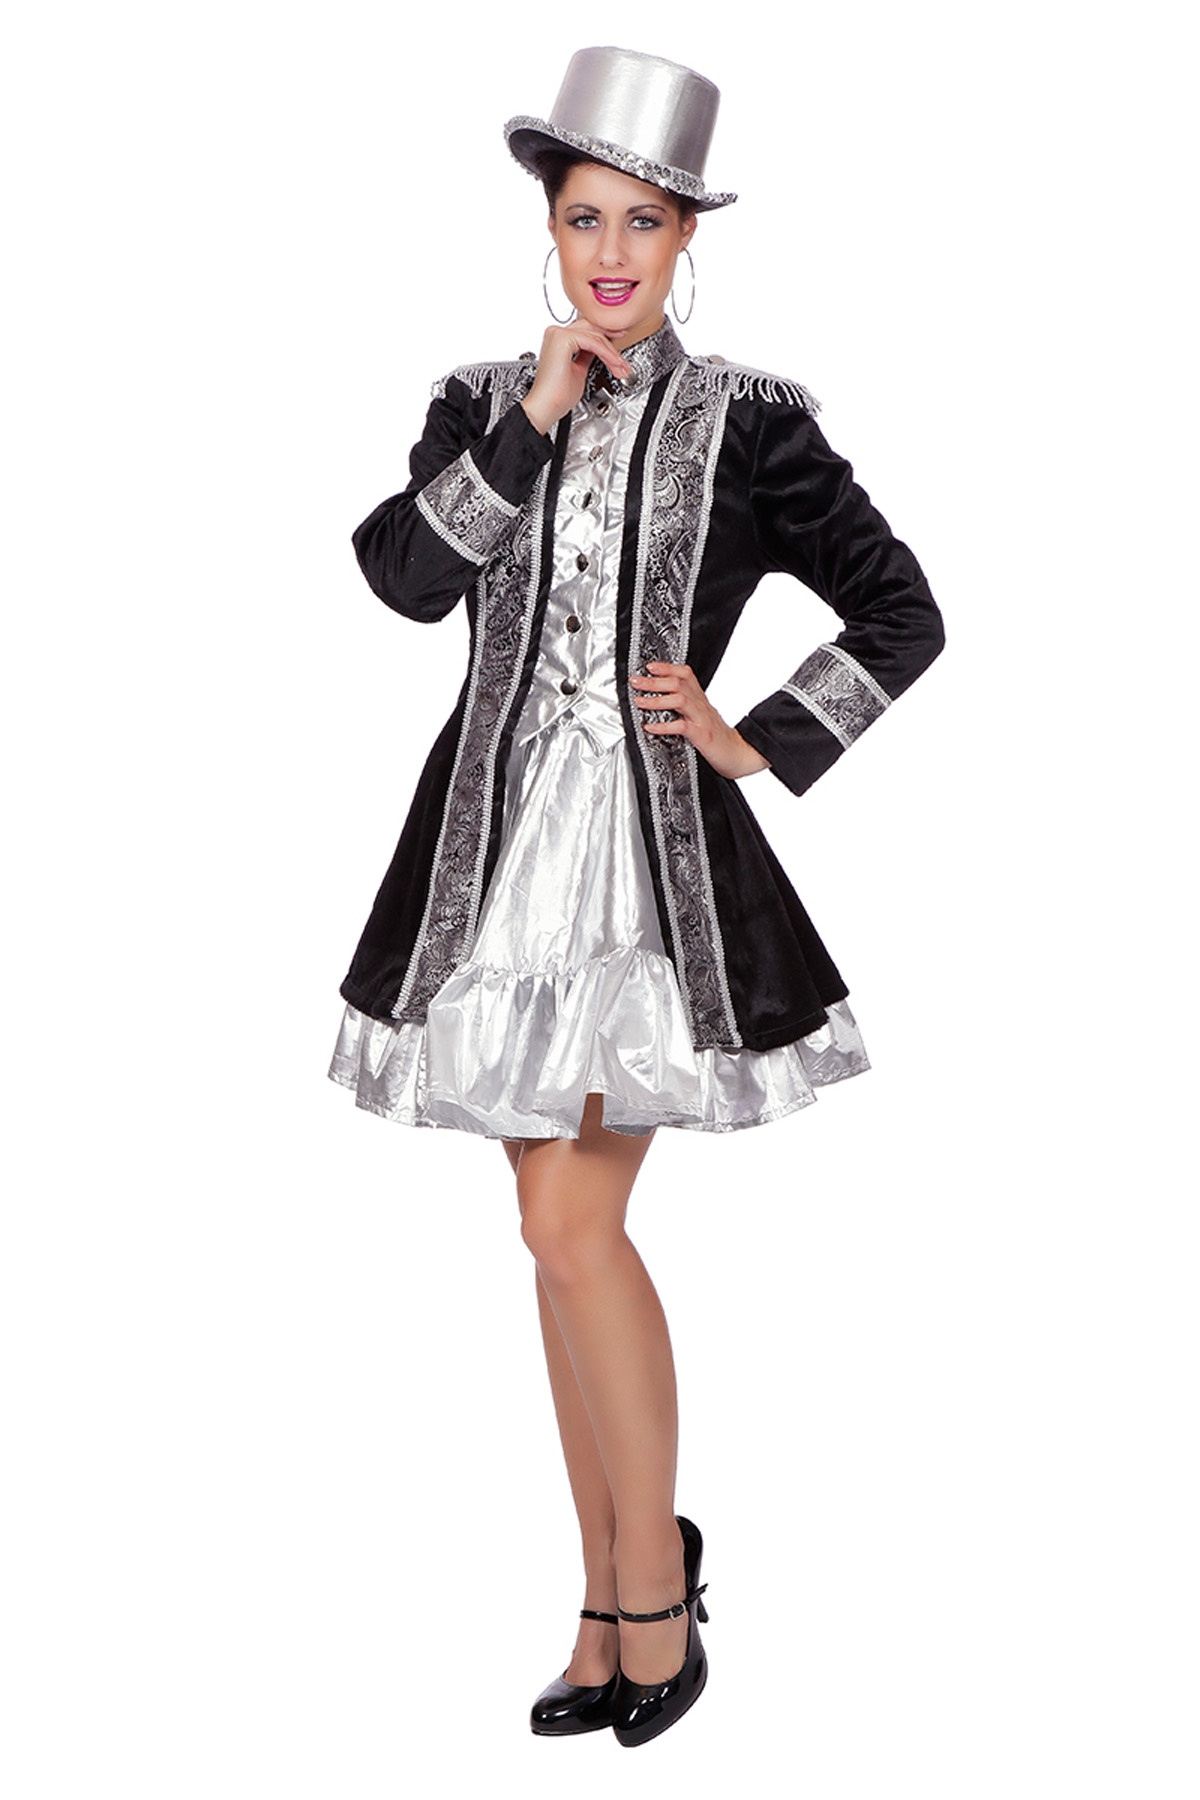 Wilbers - Jaren 20 Danseressen Kostuum - Showgirl Uit Parijs Jas Vrouw - zwart,zilver - Maat 42 - Carnavalskleding - Verkleedkleding